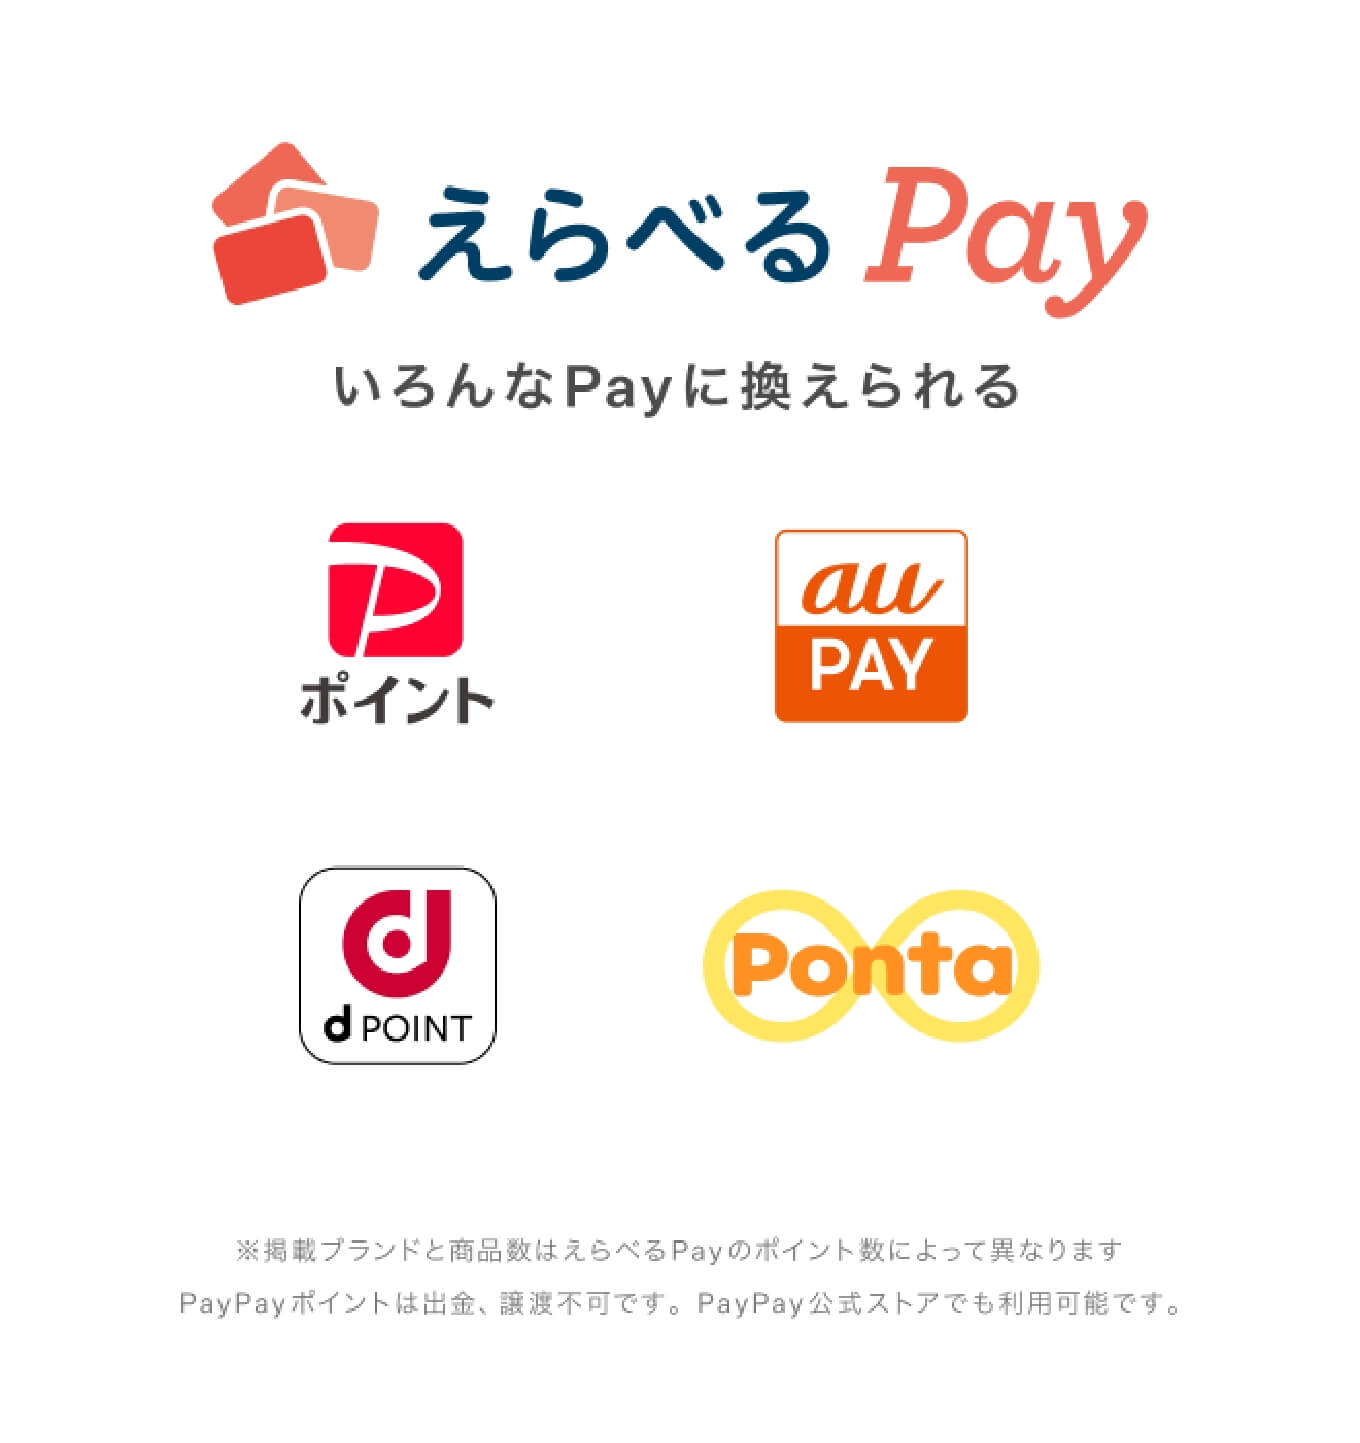 えらべるPay いろんなPayに換えられる PayPay、AU PAY、d POINT、Ponta ※掲載ブランドと商品数はえらべるPayのポイント数によって異なります PayPayポイントは出金、譲渡不可です。PayPay公式ストアでも利用可能です。